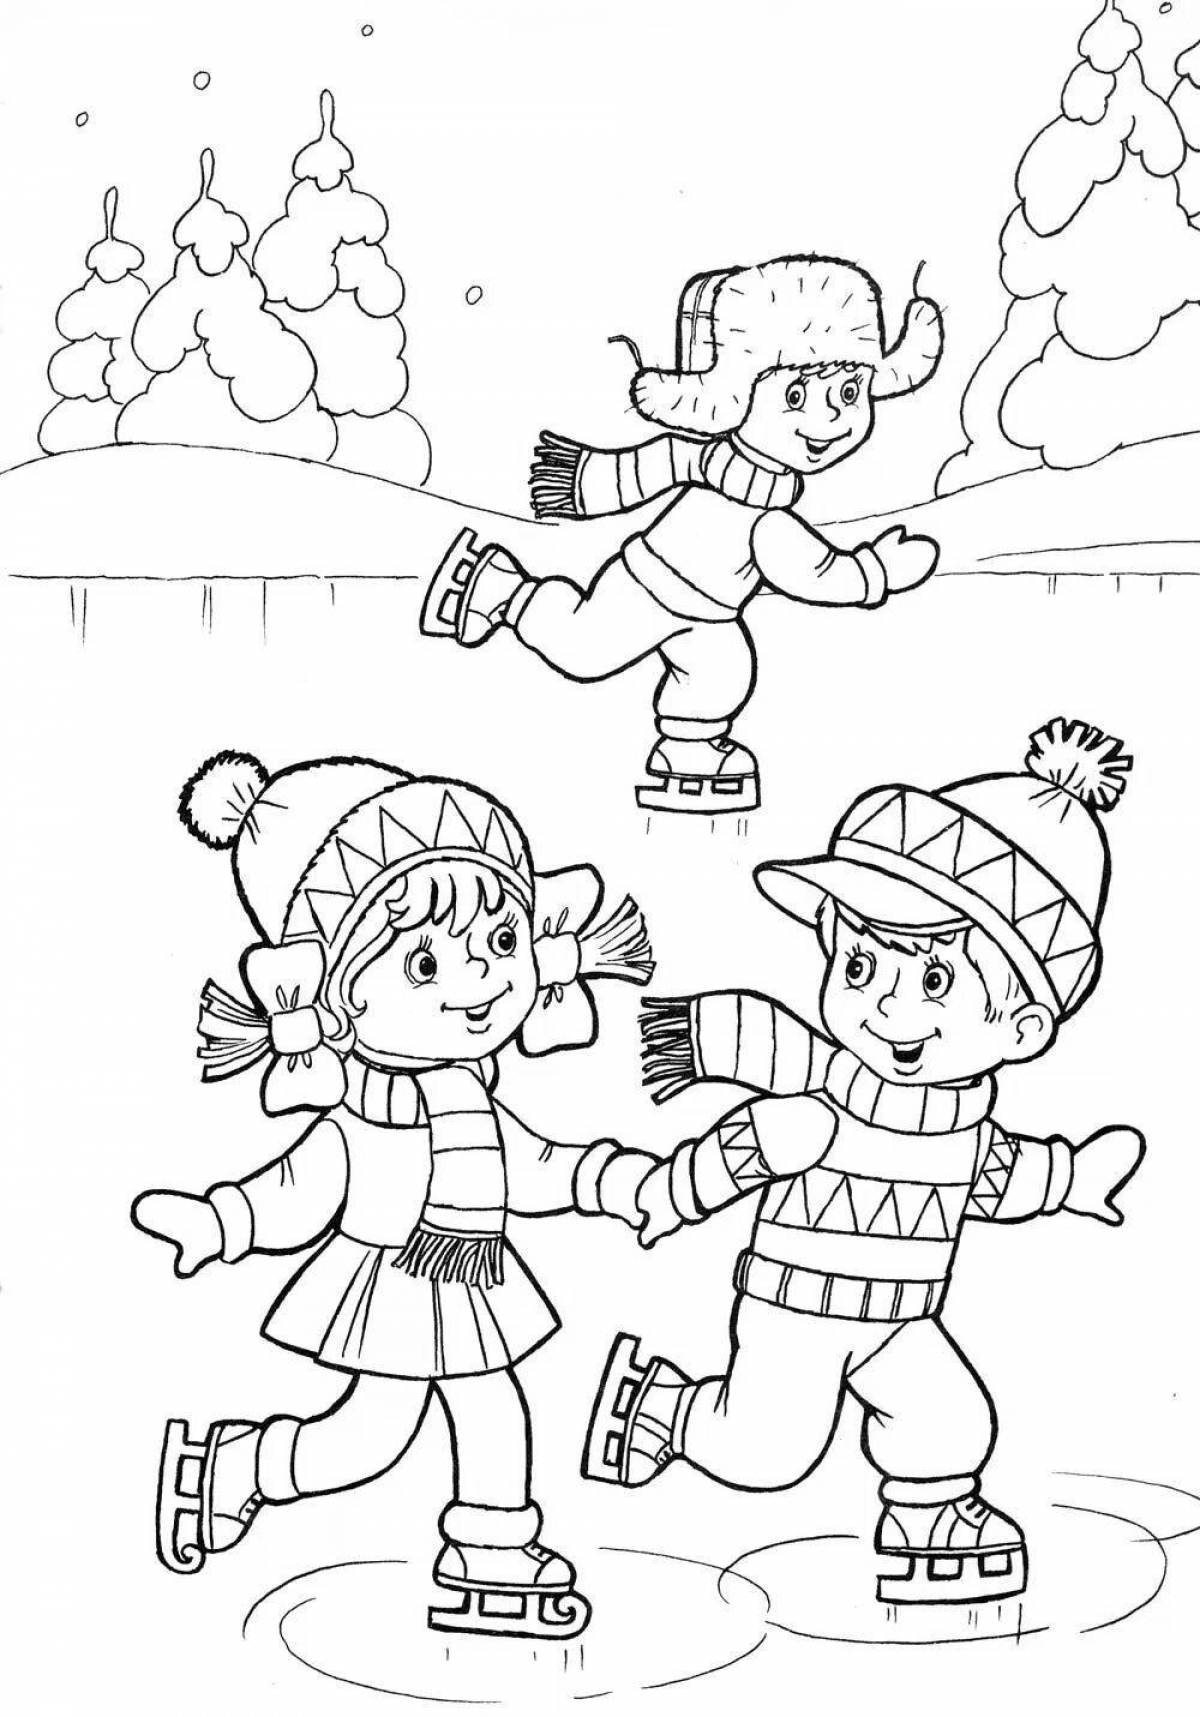 Радостная раскраска для детей на улице зимой